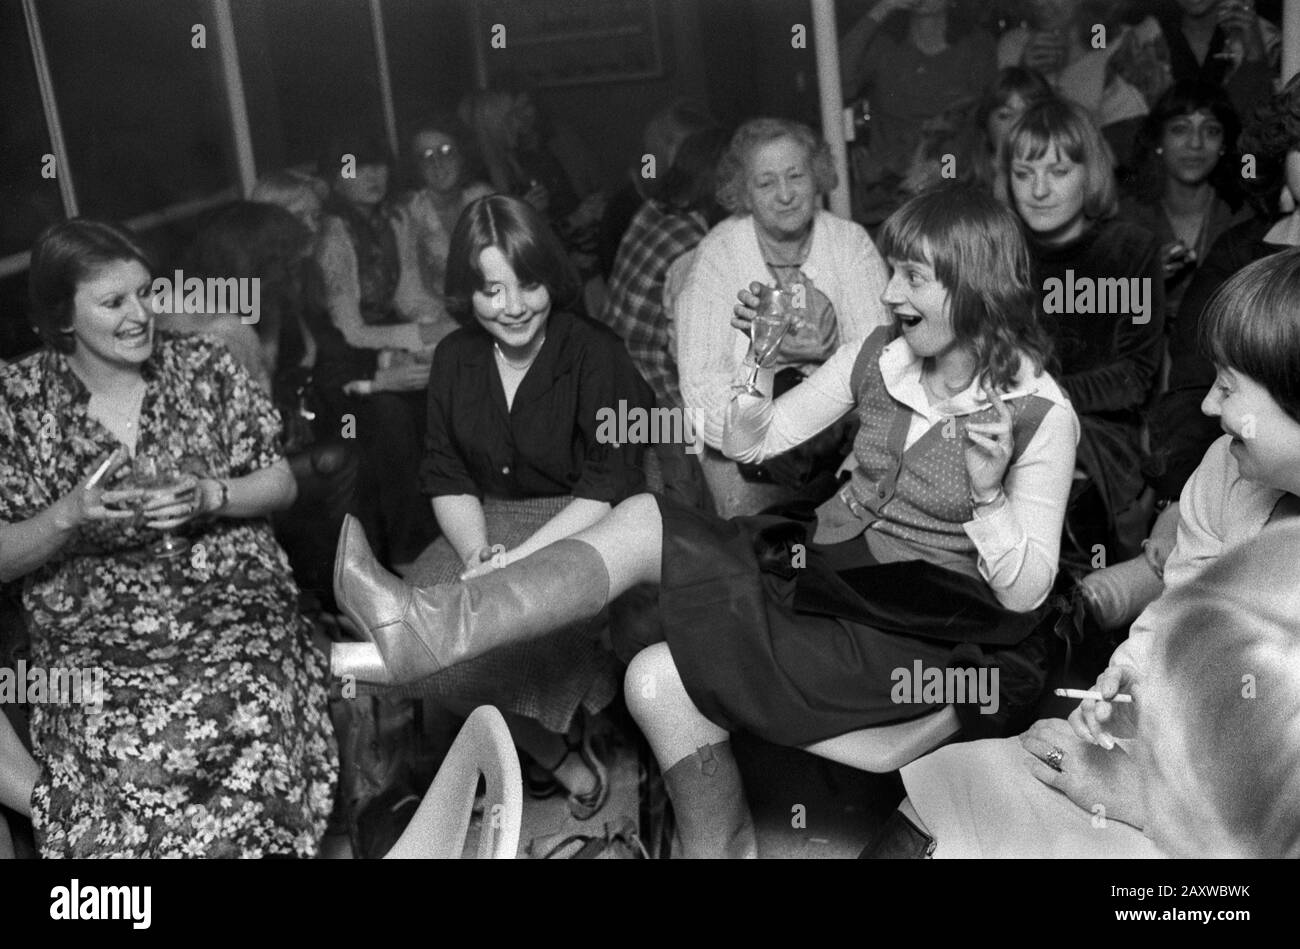 Hen Party 1970 Londres Royaume-Uni. Les jeunes femmes de groupe et une dame âgée de haut niveau qui regarde tout le monde s'amuser. Boire, montrer une jambe tirant sur un visage. Soirée fille. 1979 HOMER SYKES Banque D'Images